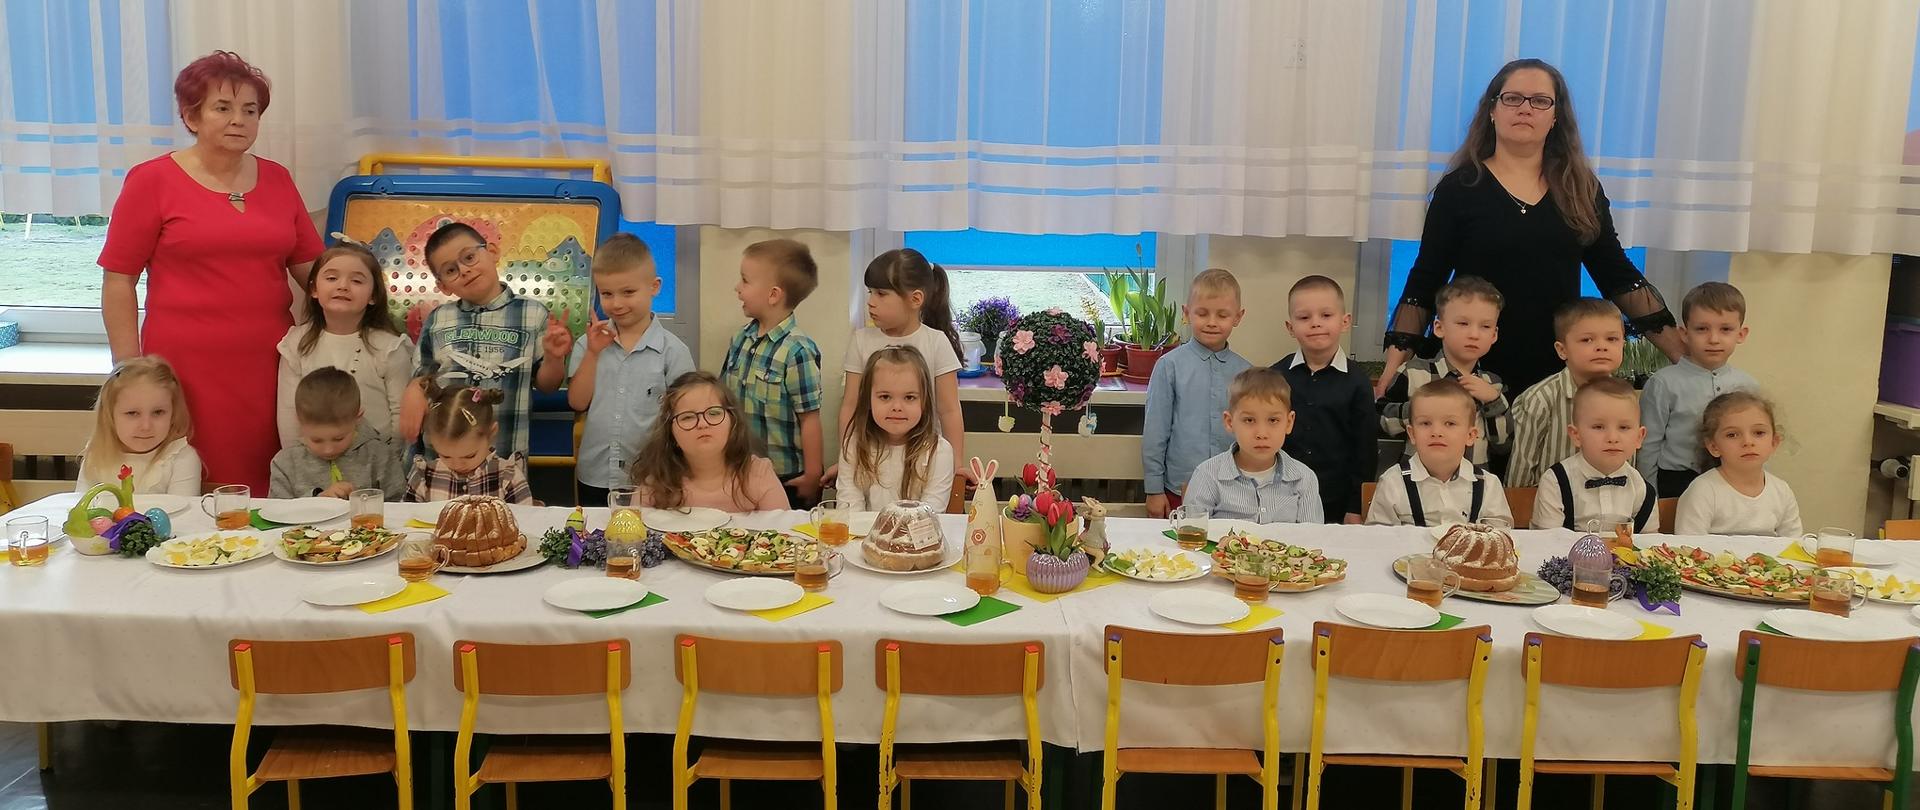 grupa dzieci i 2 nauczycieli stoją za stołem z potrawami wielkanocnymi